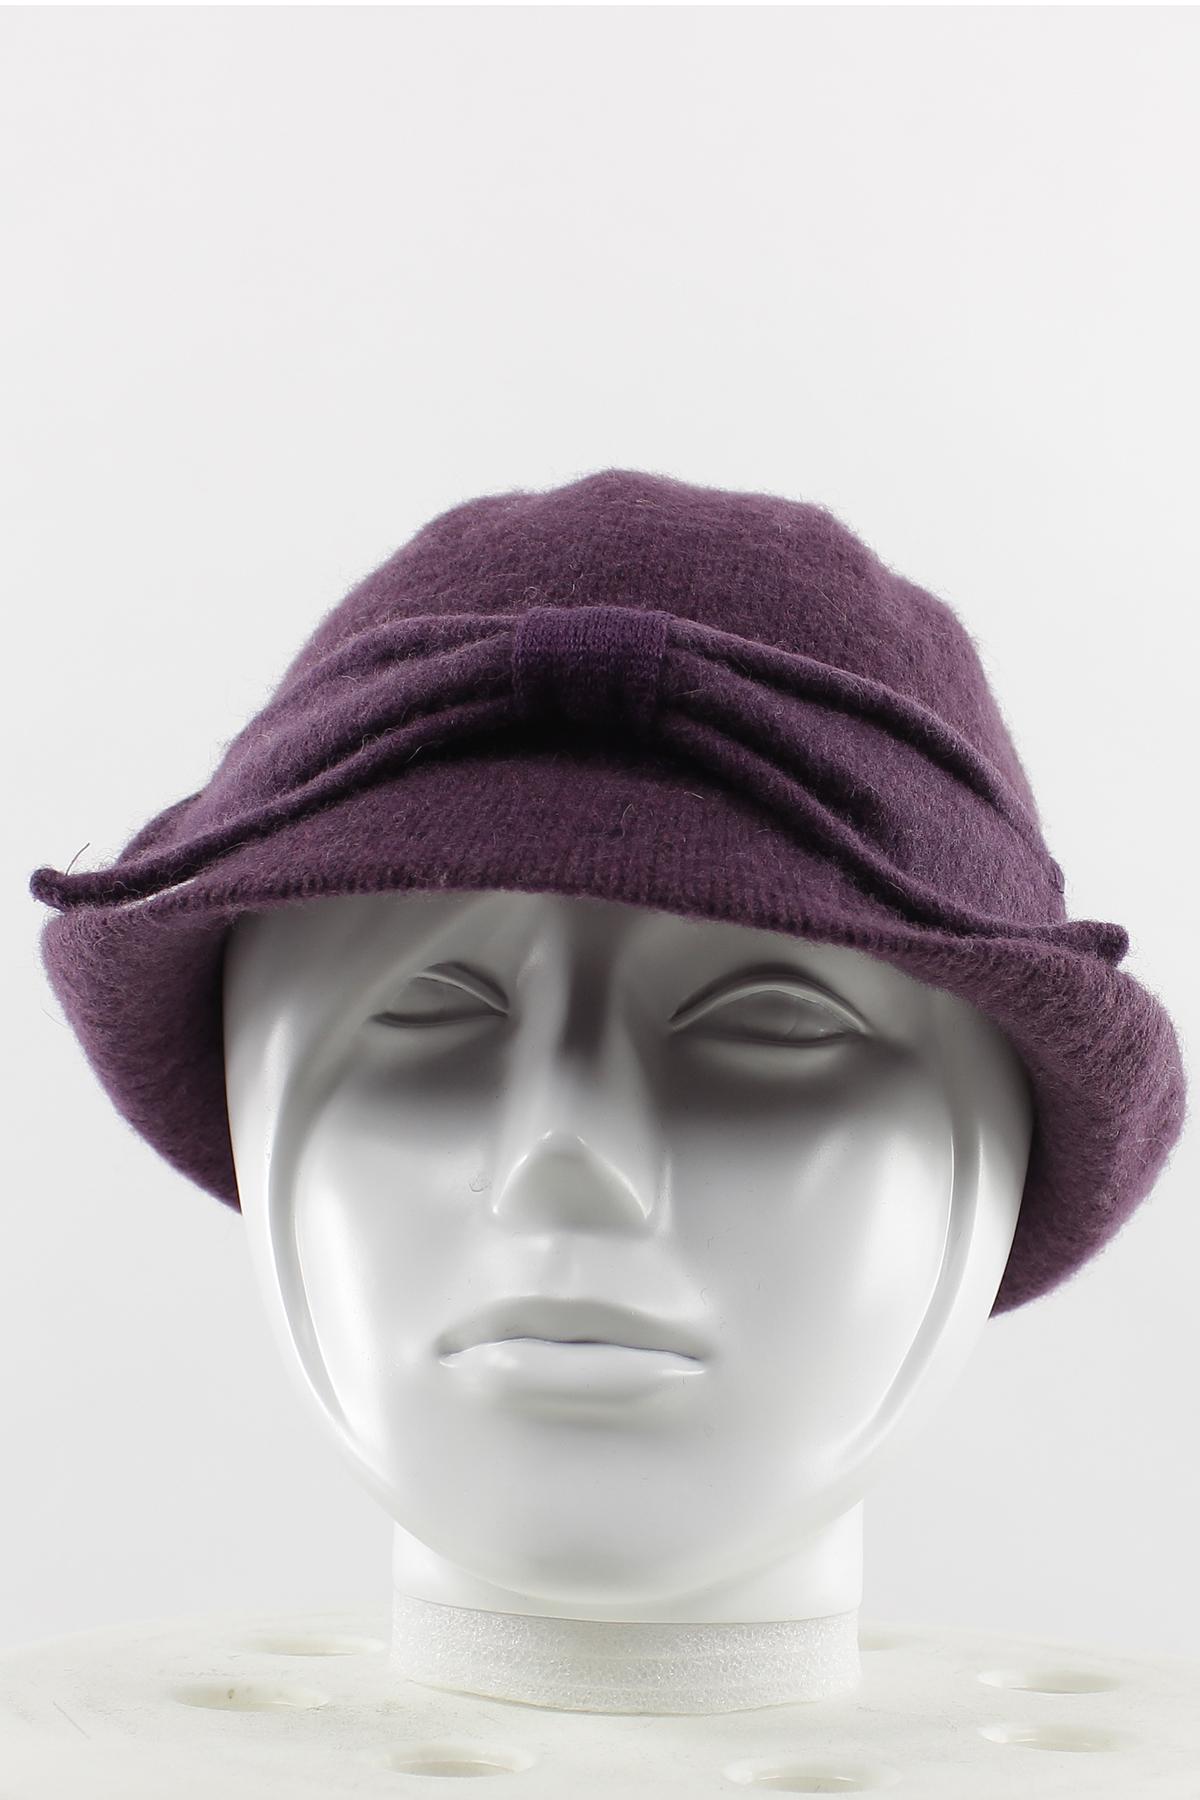 Sombreros Complementos Purple Lil Moon GHT-006 #c Efashion Paris